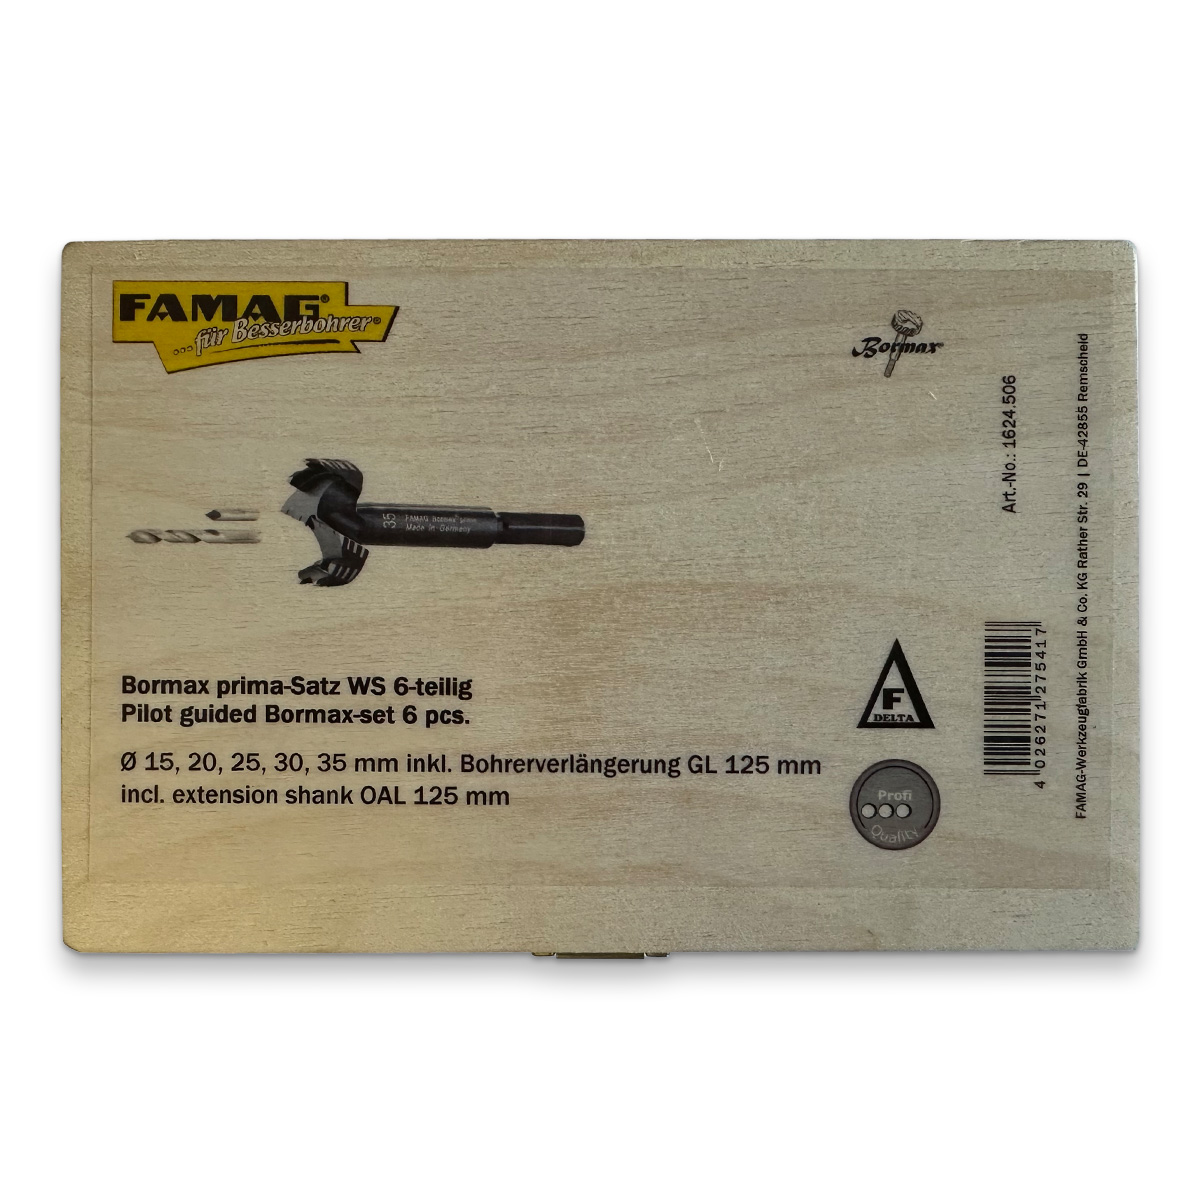 FAMAG Bormax WS prima Profi 15, 20, 25, 30, 35 mm inkl. Zentrierspitze, Vorbohrer 4 mm und Verlängerung